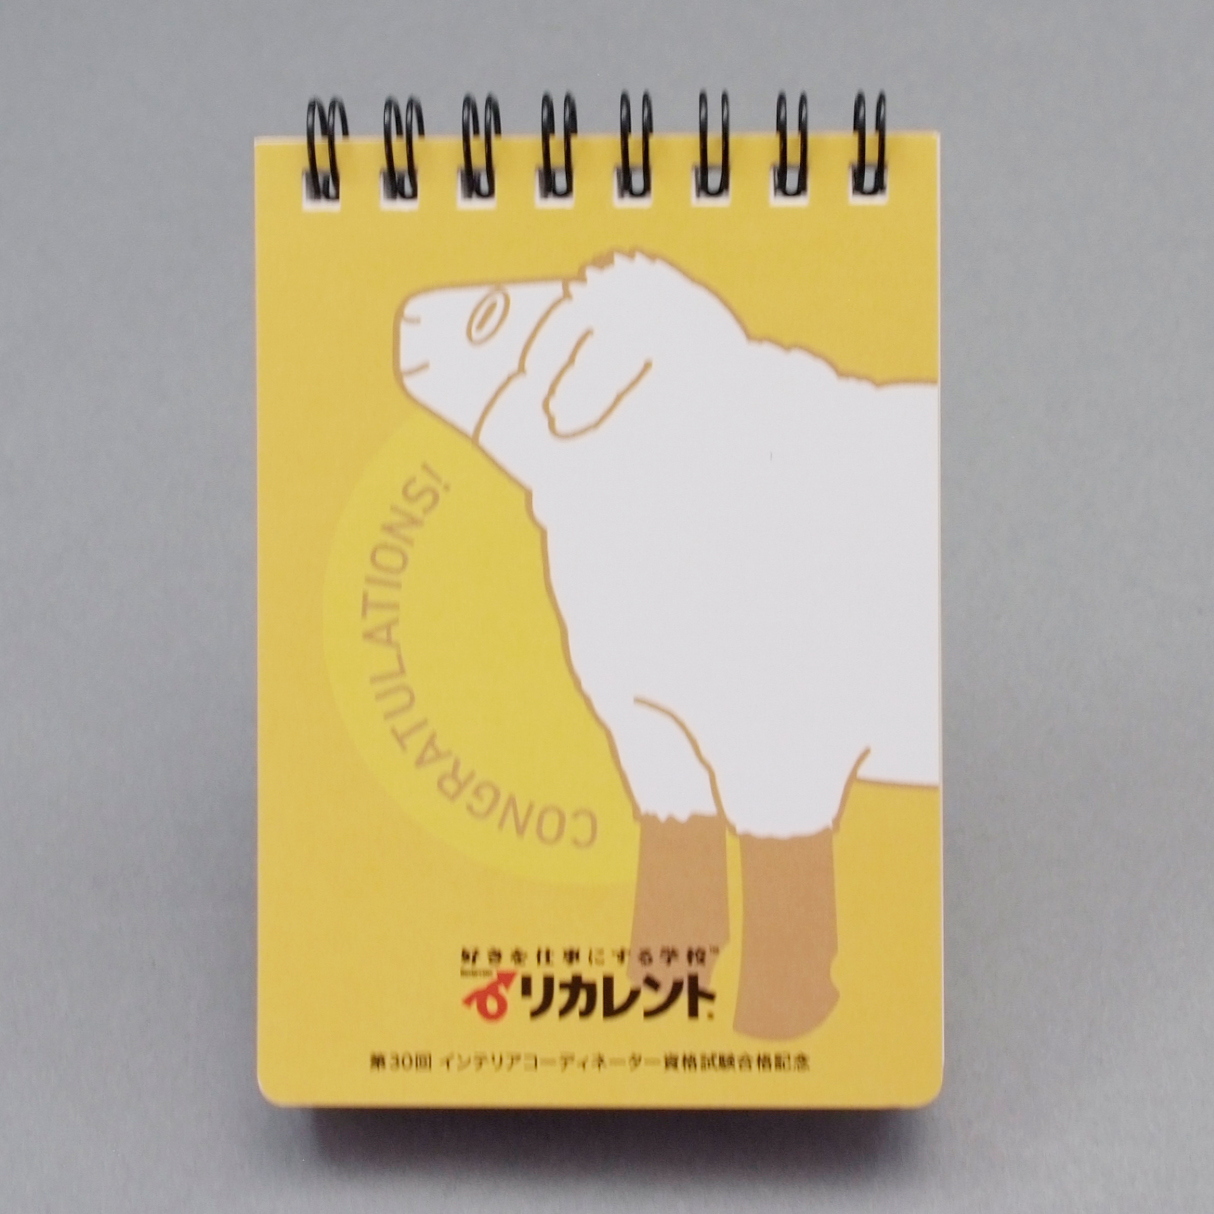 「株式会社日本ライセンスバンク 様」製作のオリジナルノート